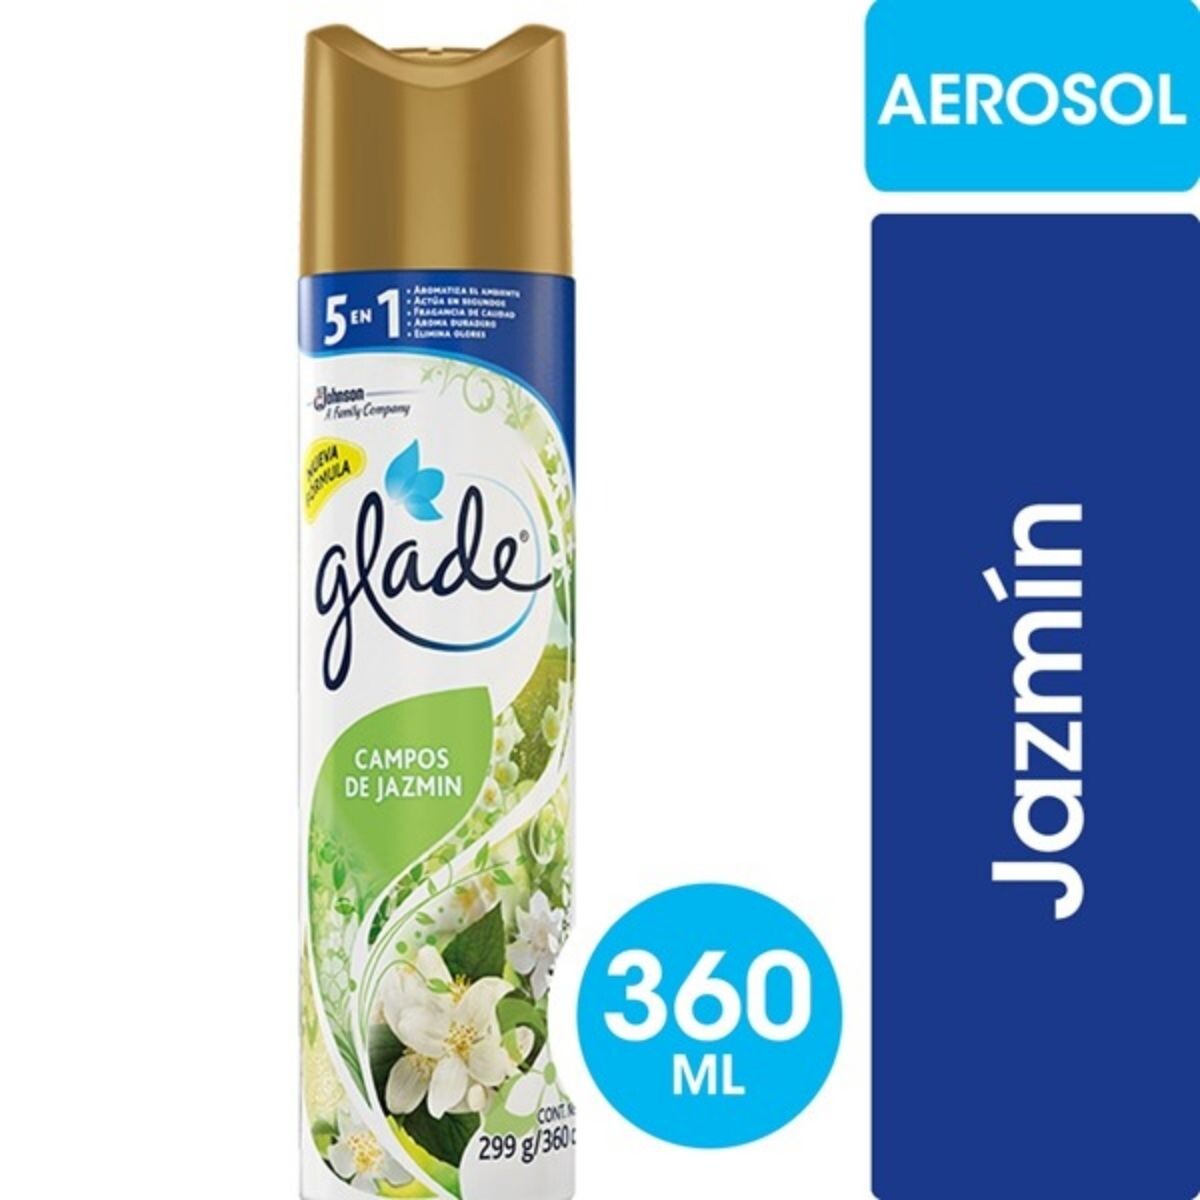 Desodorante de Ambiente Glade Aerosol - Campos de Jazmín 360 ML 